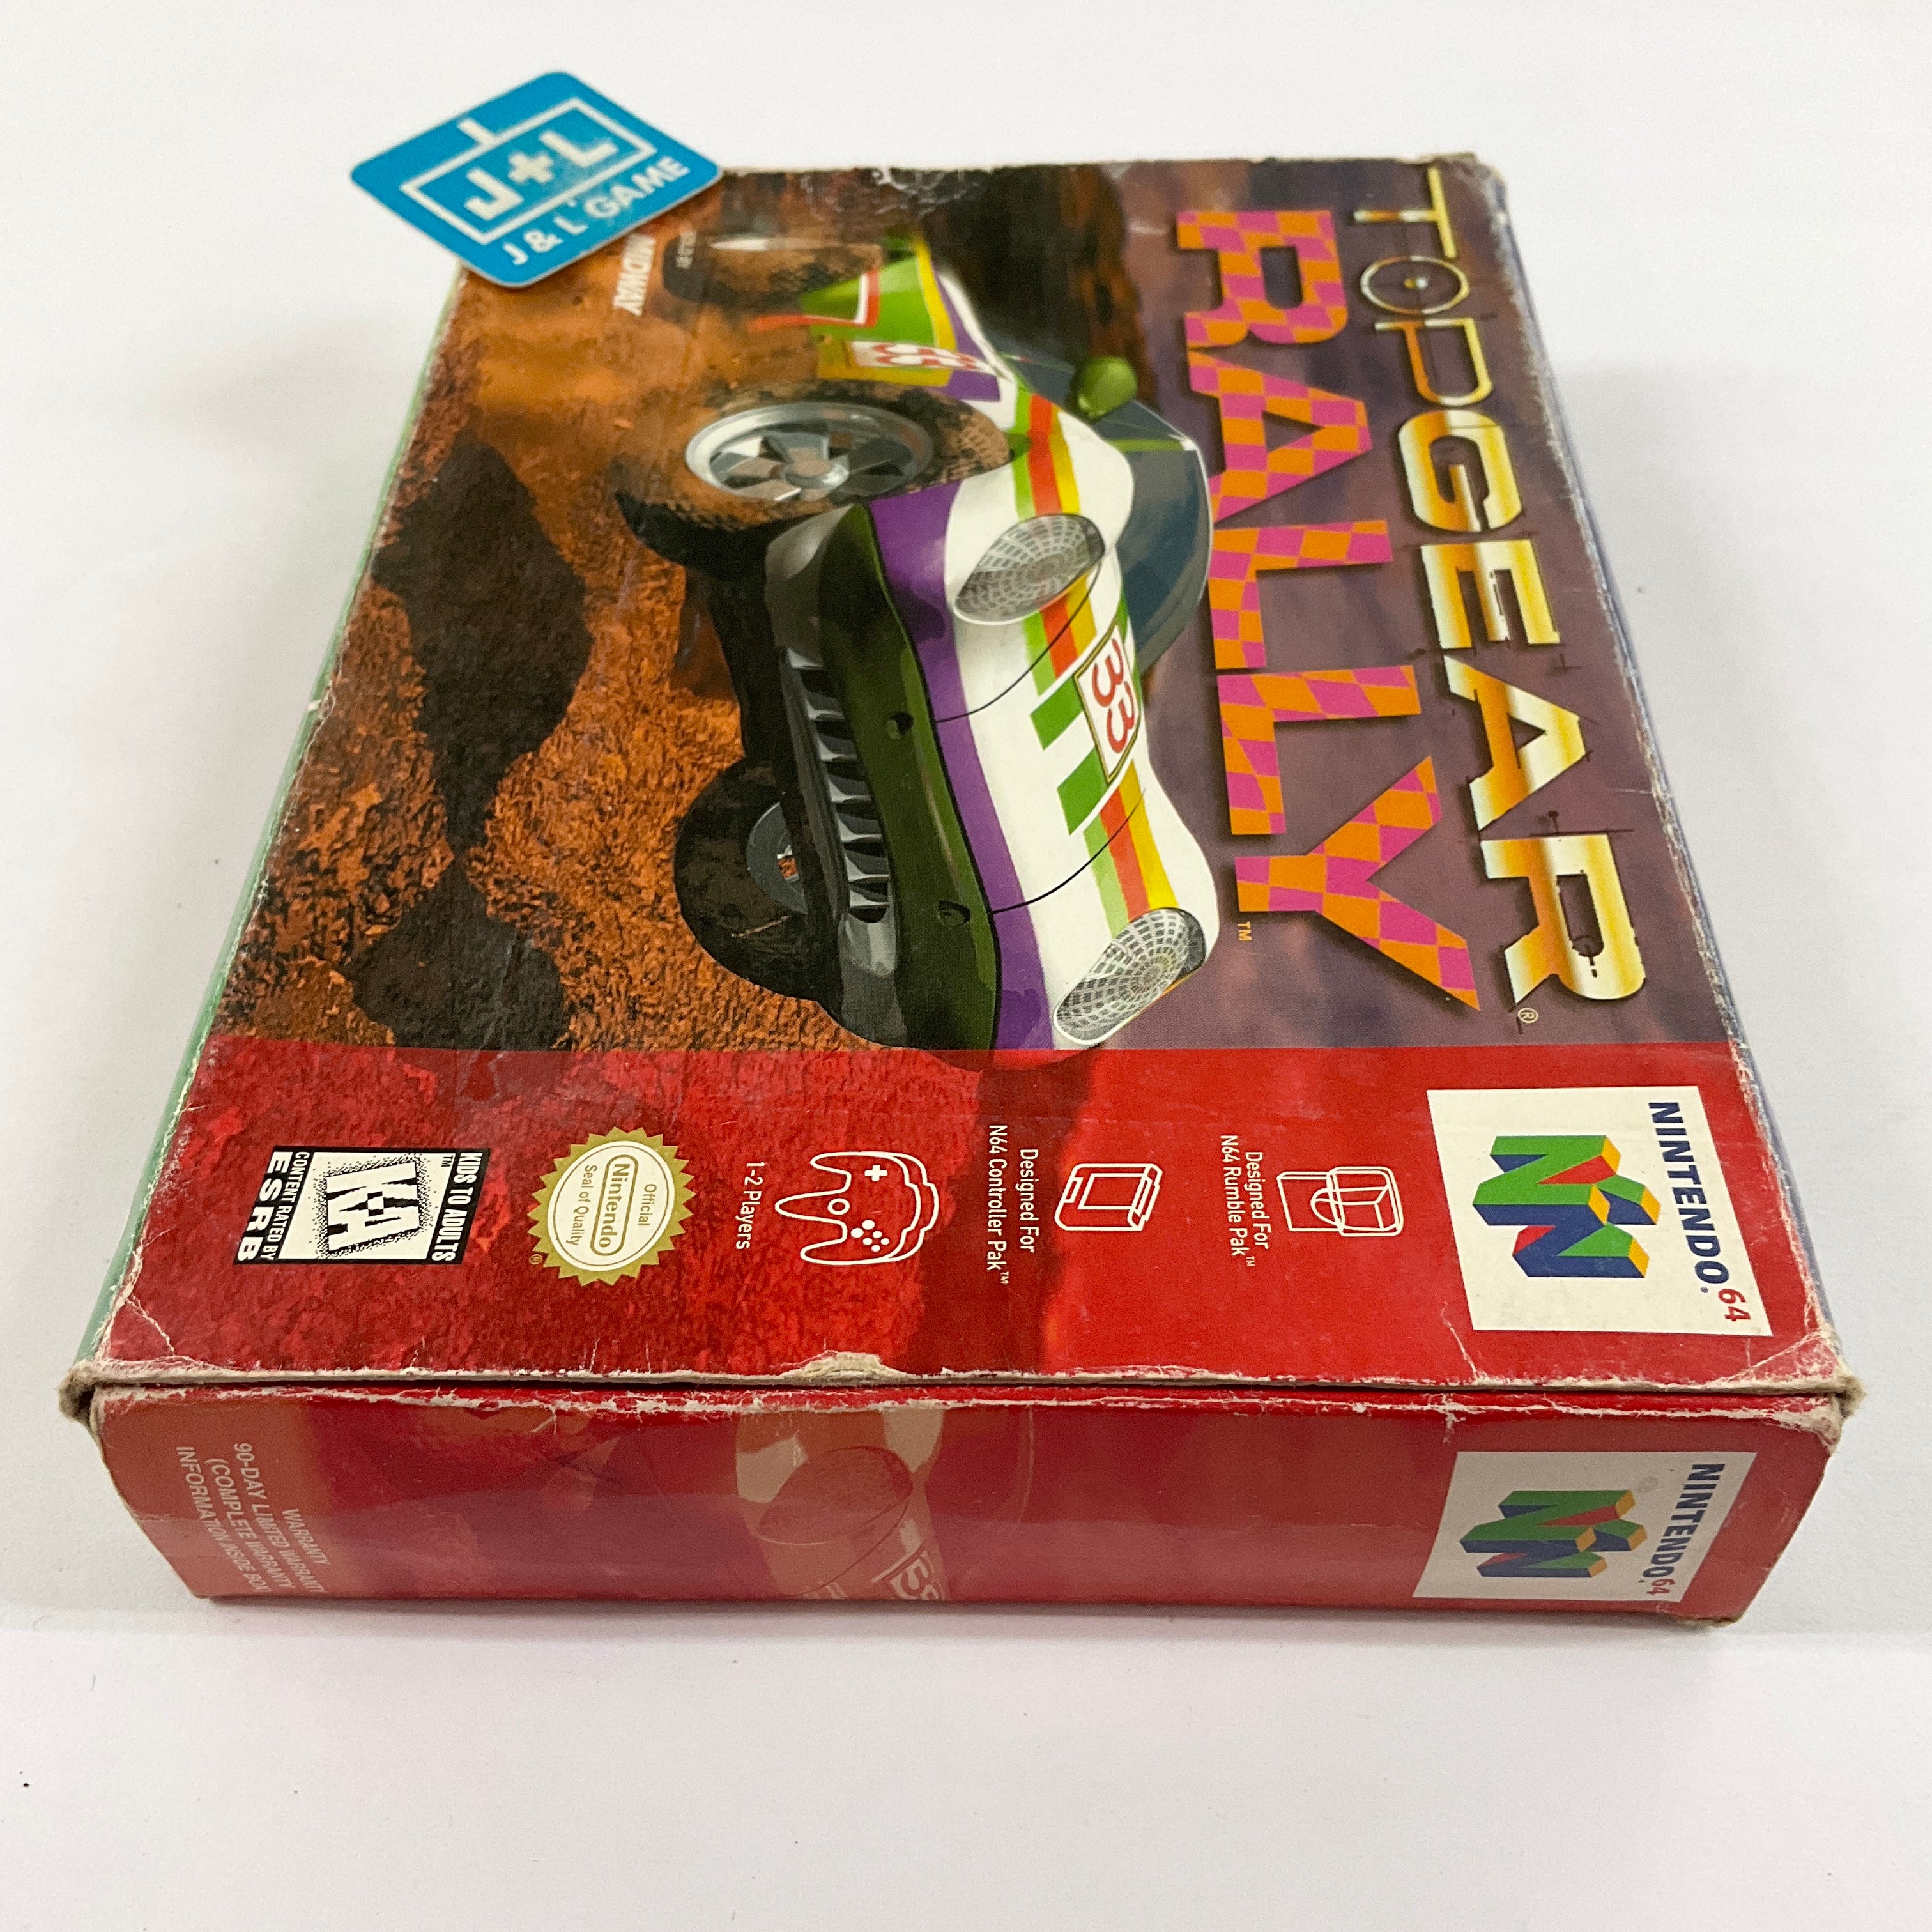 Top Gear Rally - (N64) Nintendo 64 [Pre-Owned] Video Games Kemco   